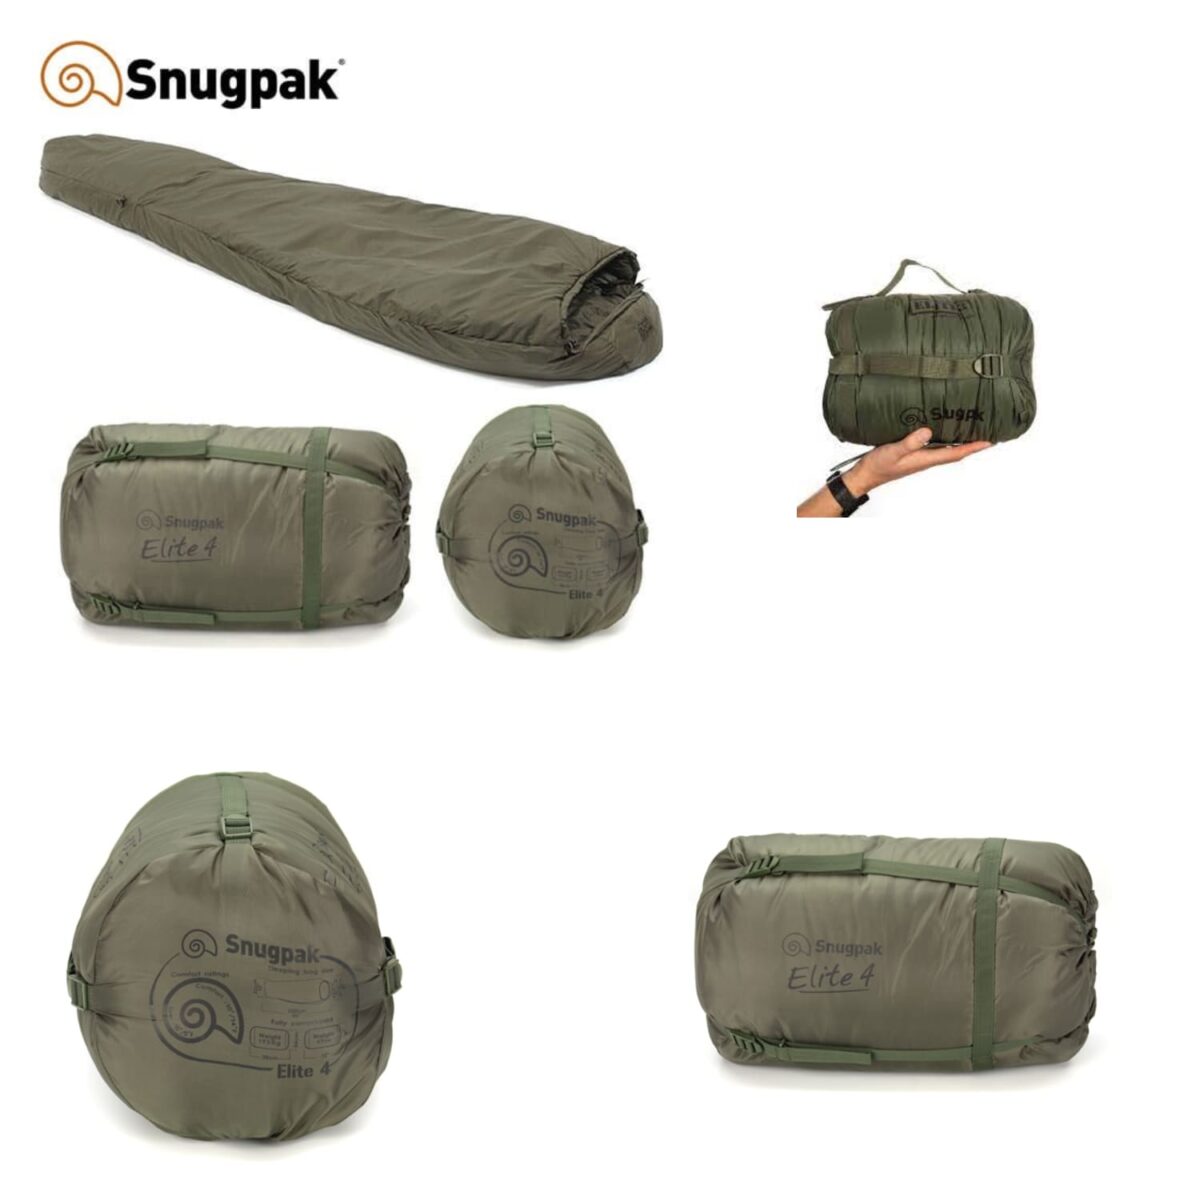 Snugpack Elite 2 (1)